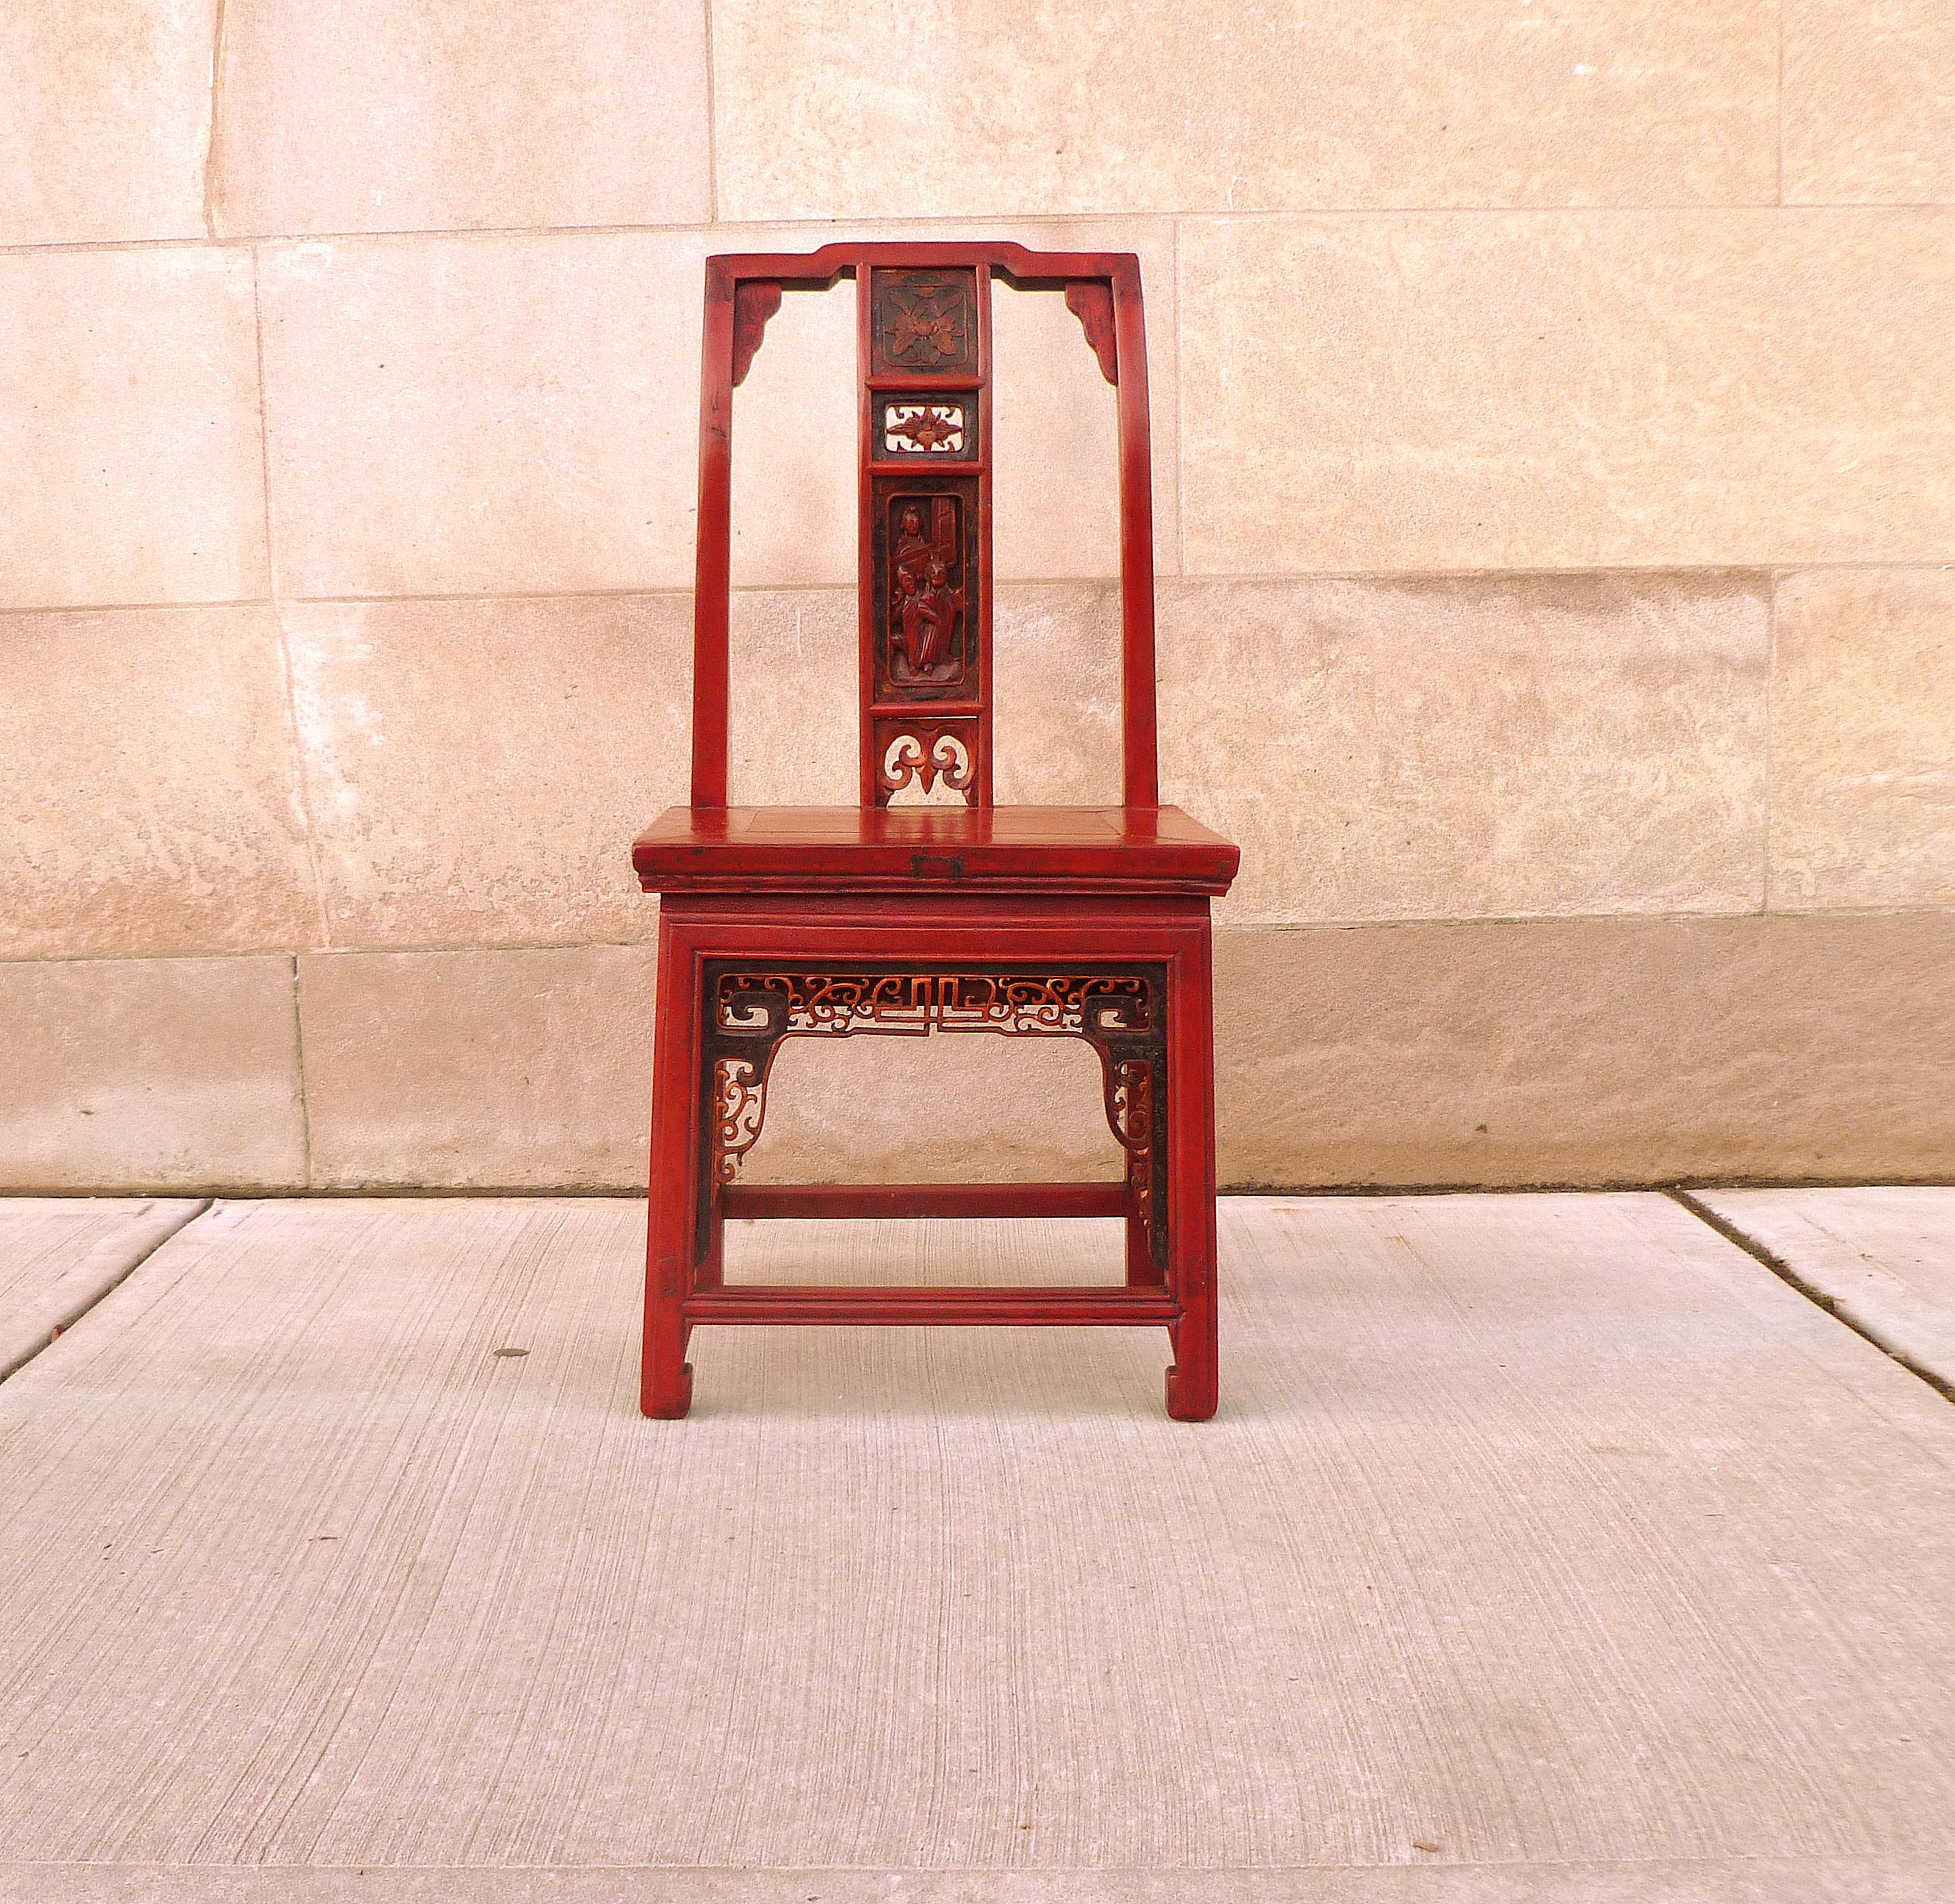 Chaise d'enfant en laque rouge, finement sculptée de perces, avec un seul tiroir sur le côté.